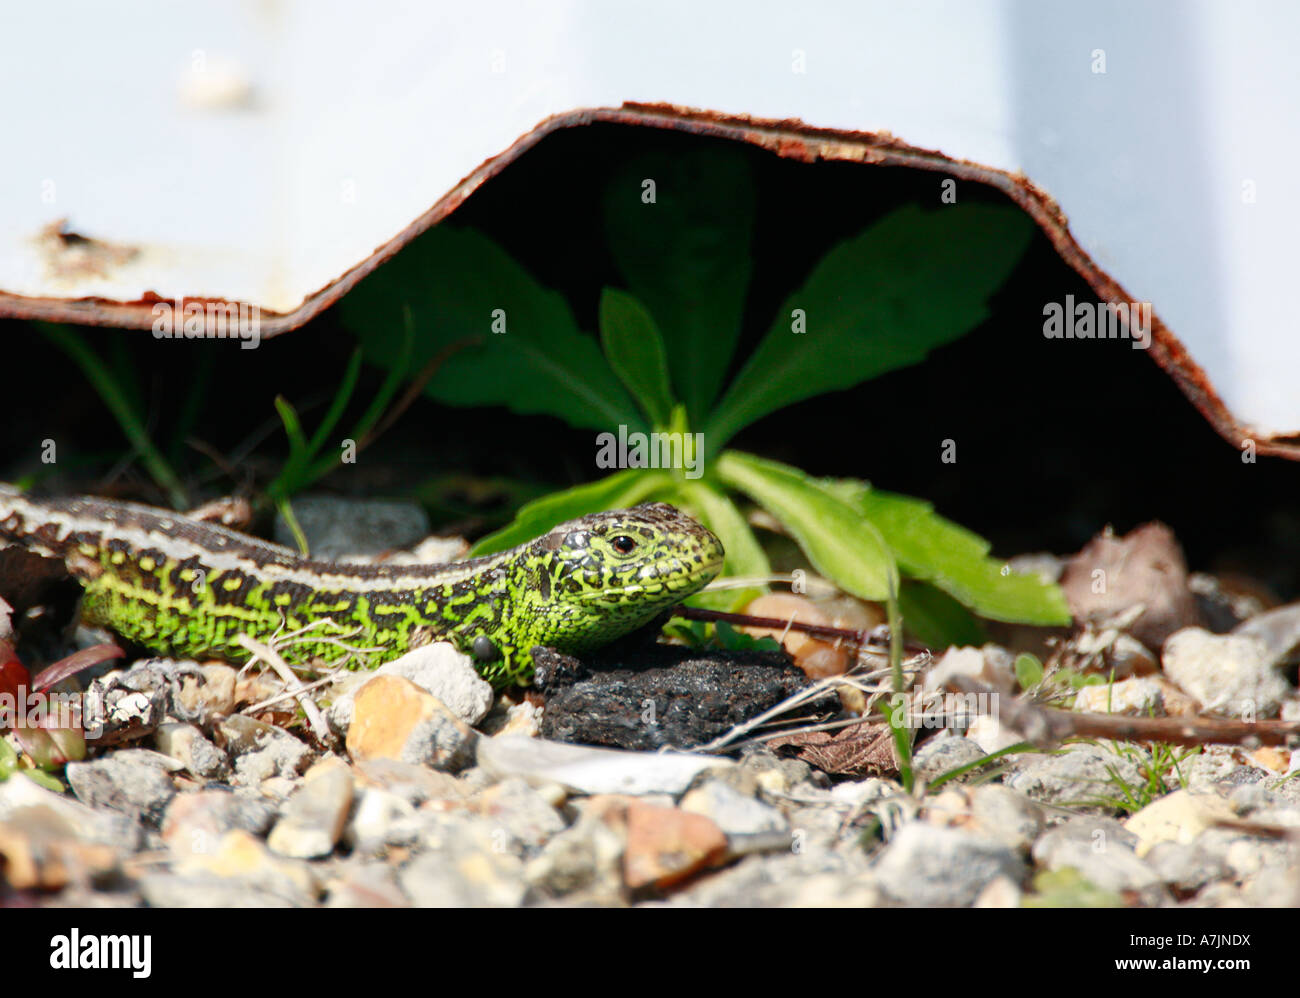 Männliche Sand Eidechse Lacerta Agilis in hellem Grün Zucht Farben neben Dach Folie Schutz Stockfoto